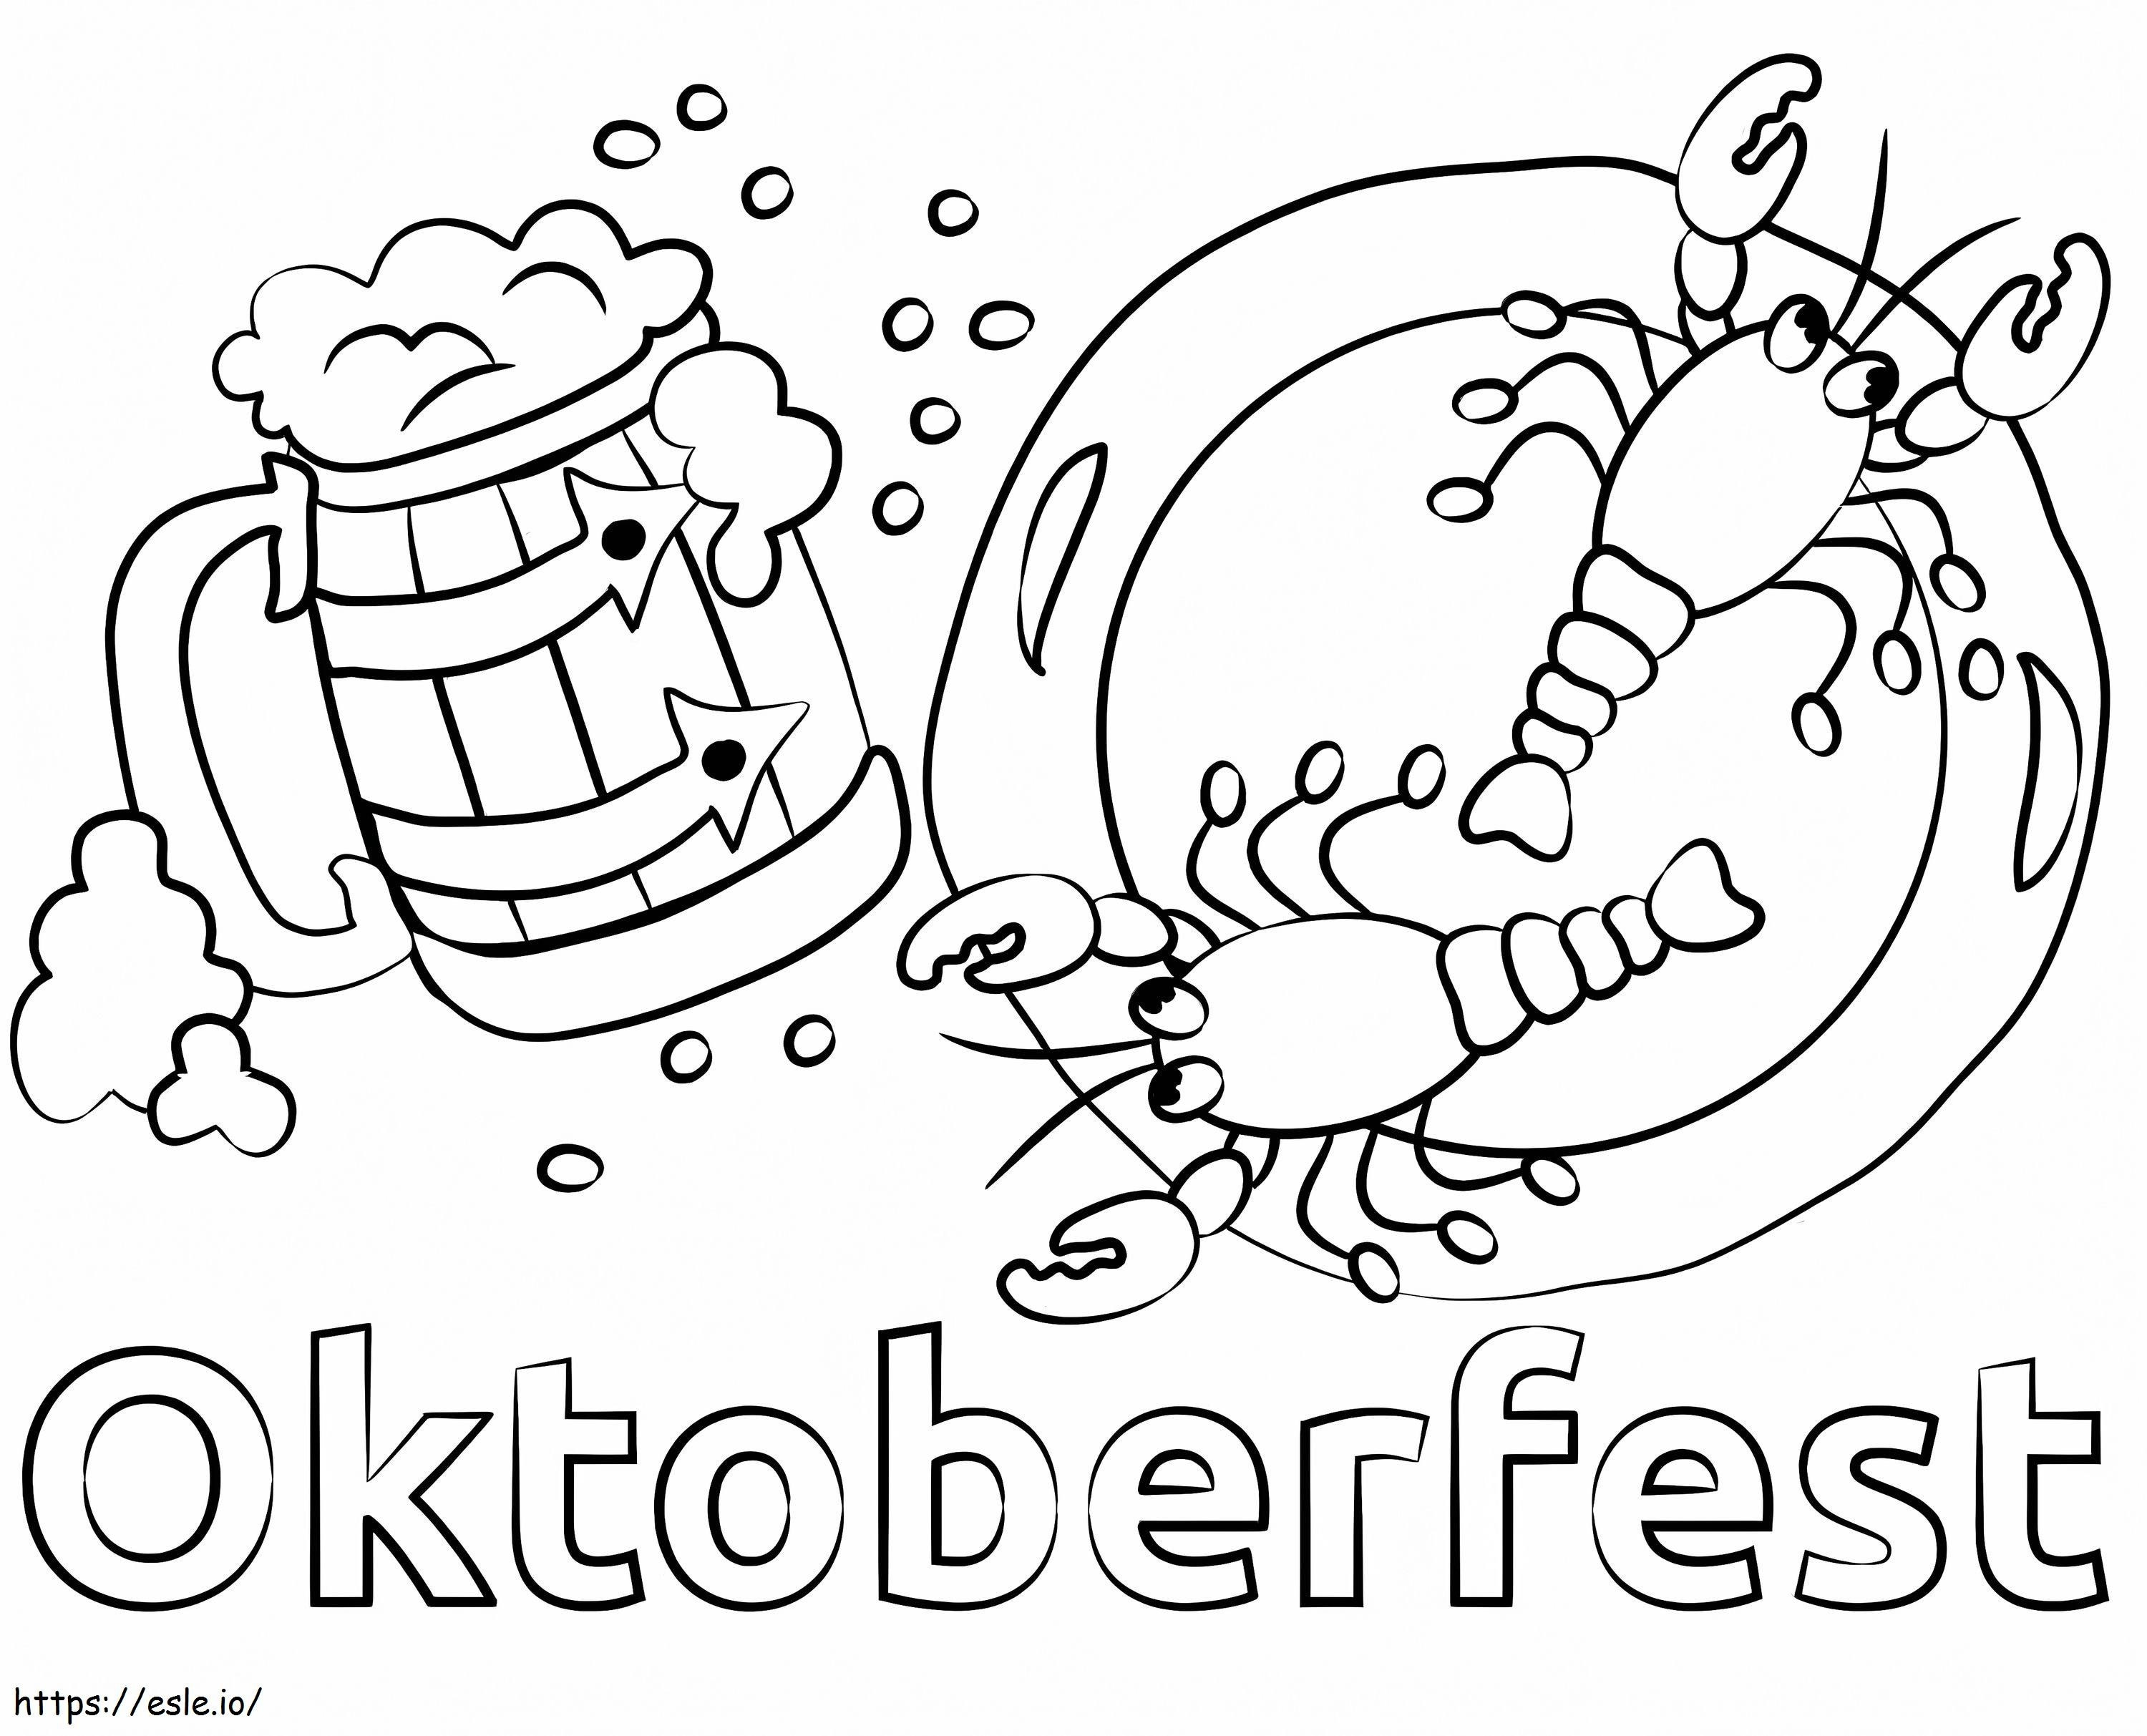 Coloriage Bière Oktoberfest Et Fruits De Mer Png à imprimer dessin